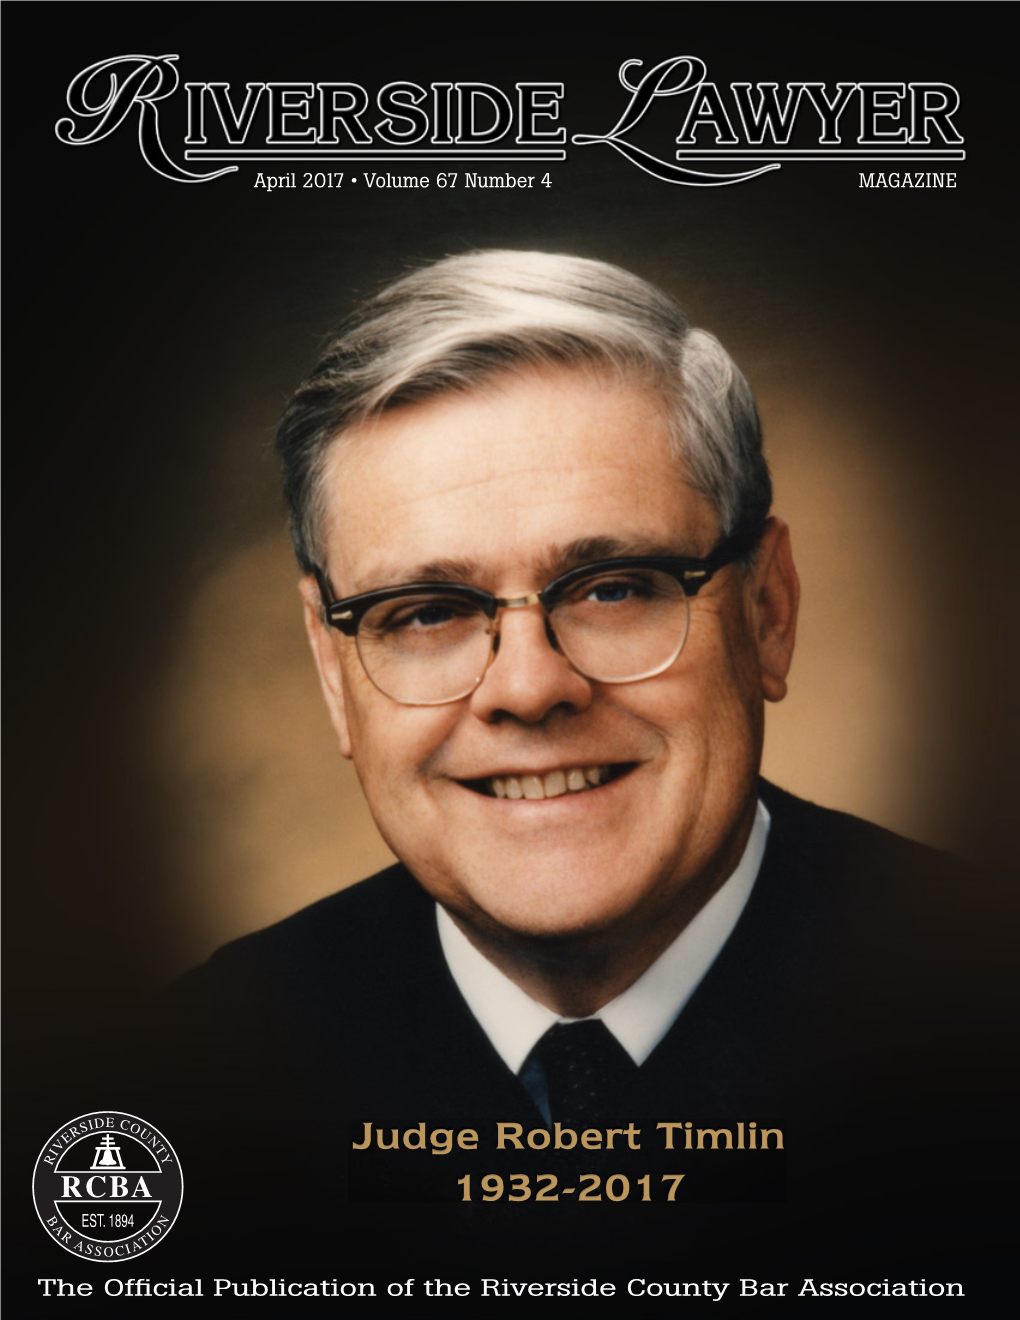 Judge Robert Timlin 1932-2017